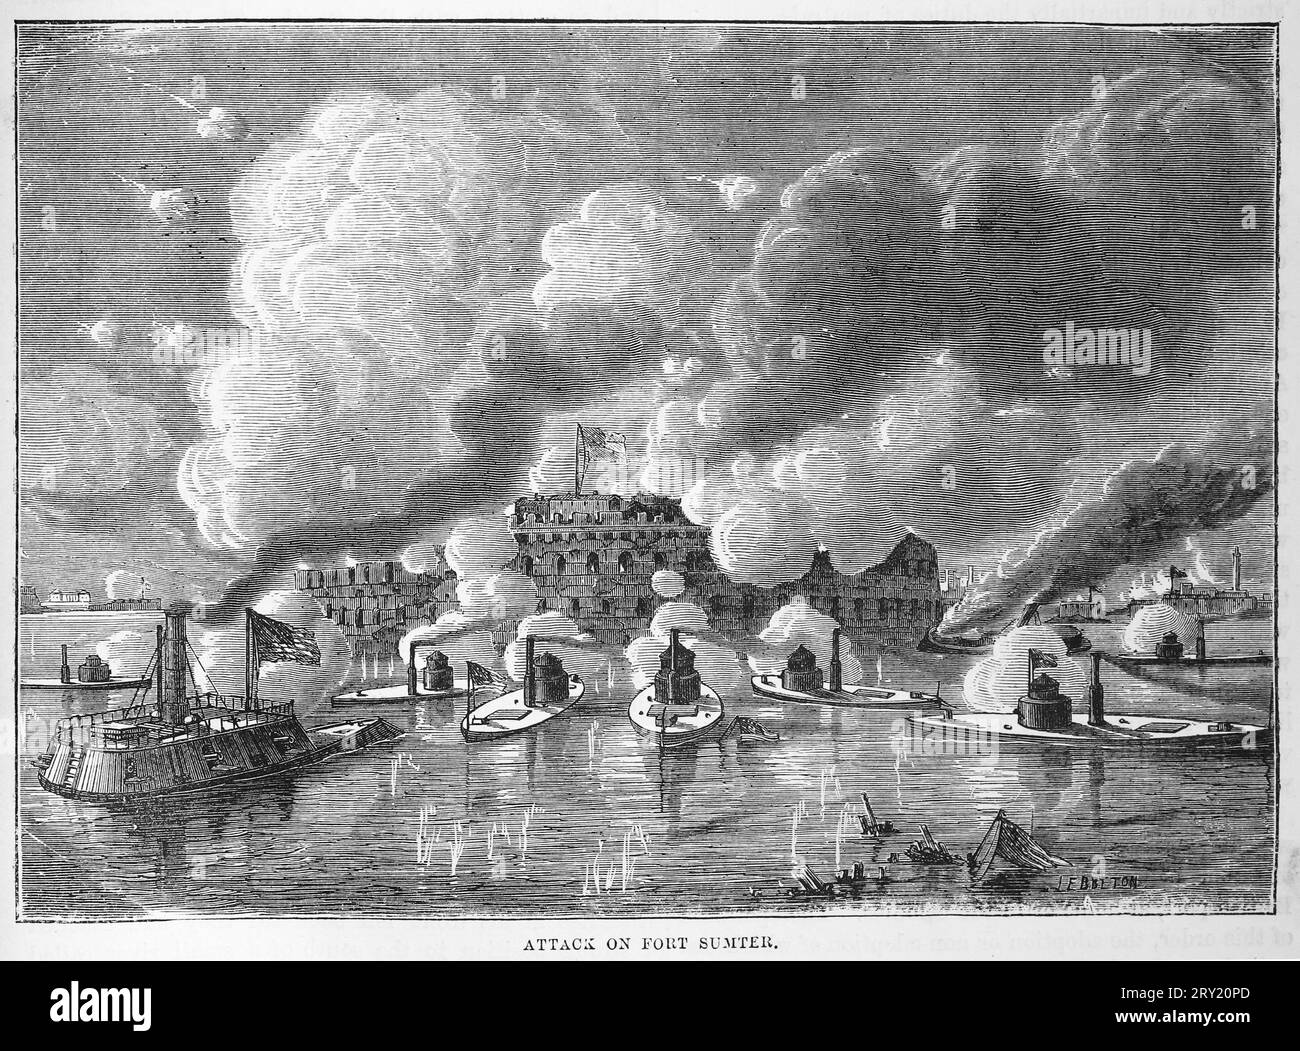 Attacco a Fort Sumter da parte della milizia della Carolina del Sud, dando inizio alla guerra di secessione americana del 1860. Illustrazione in bianco e nero Foto Stock